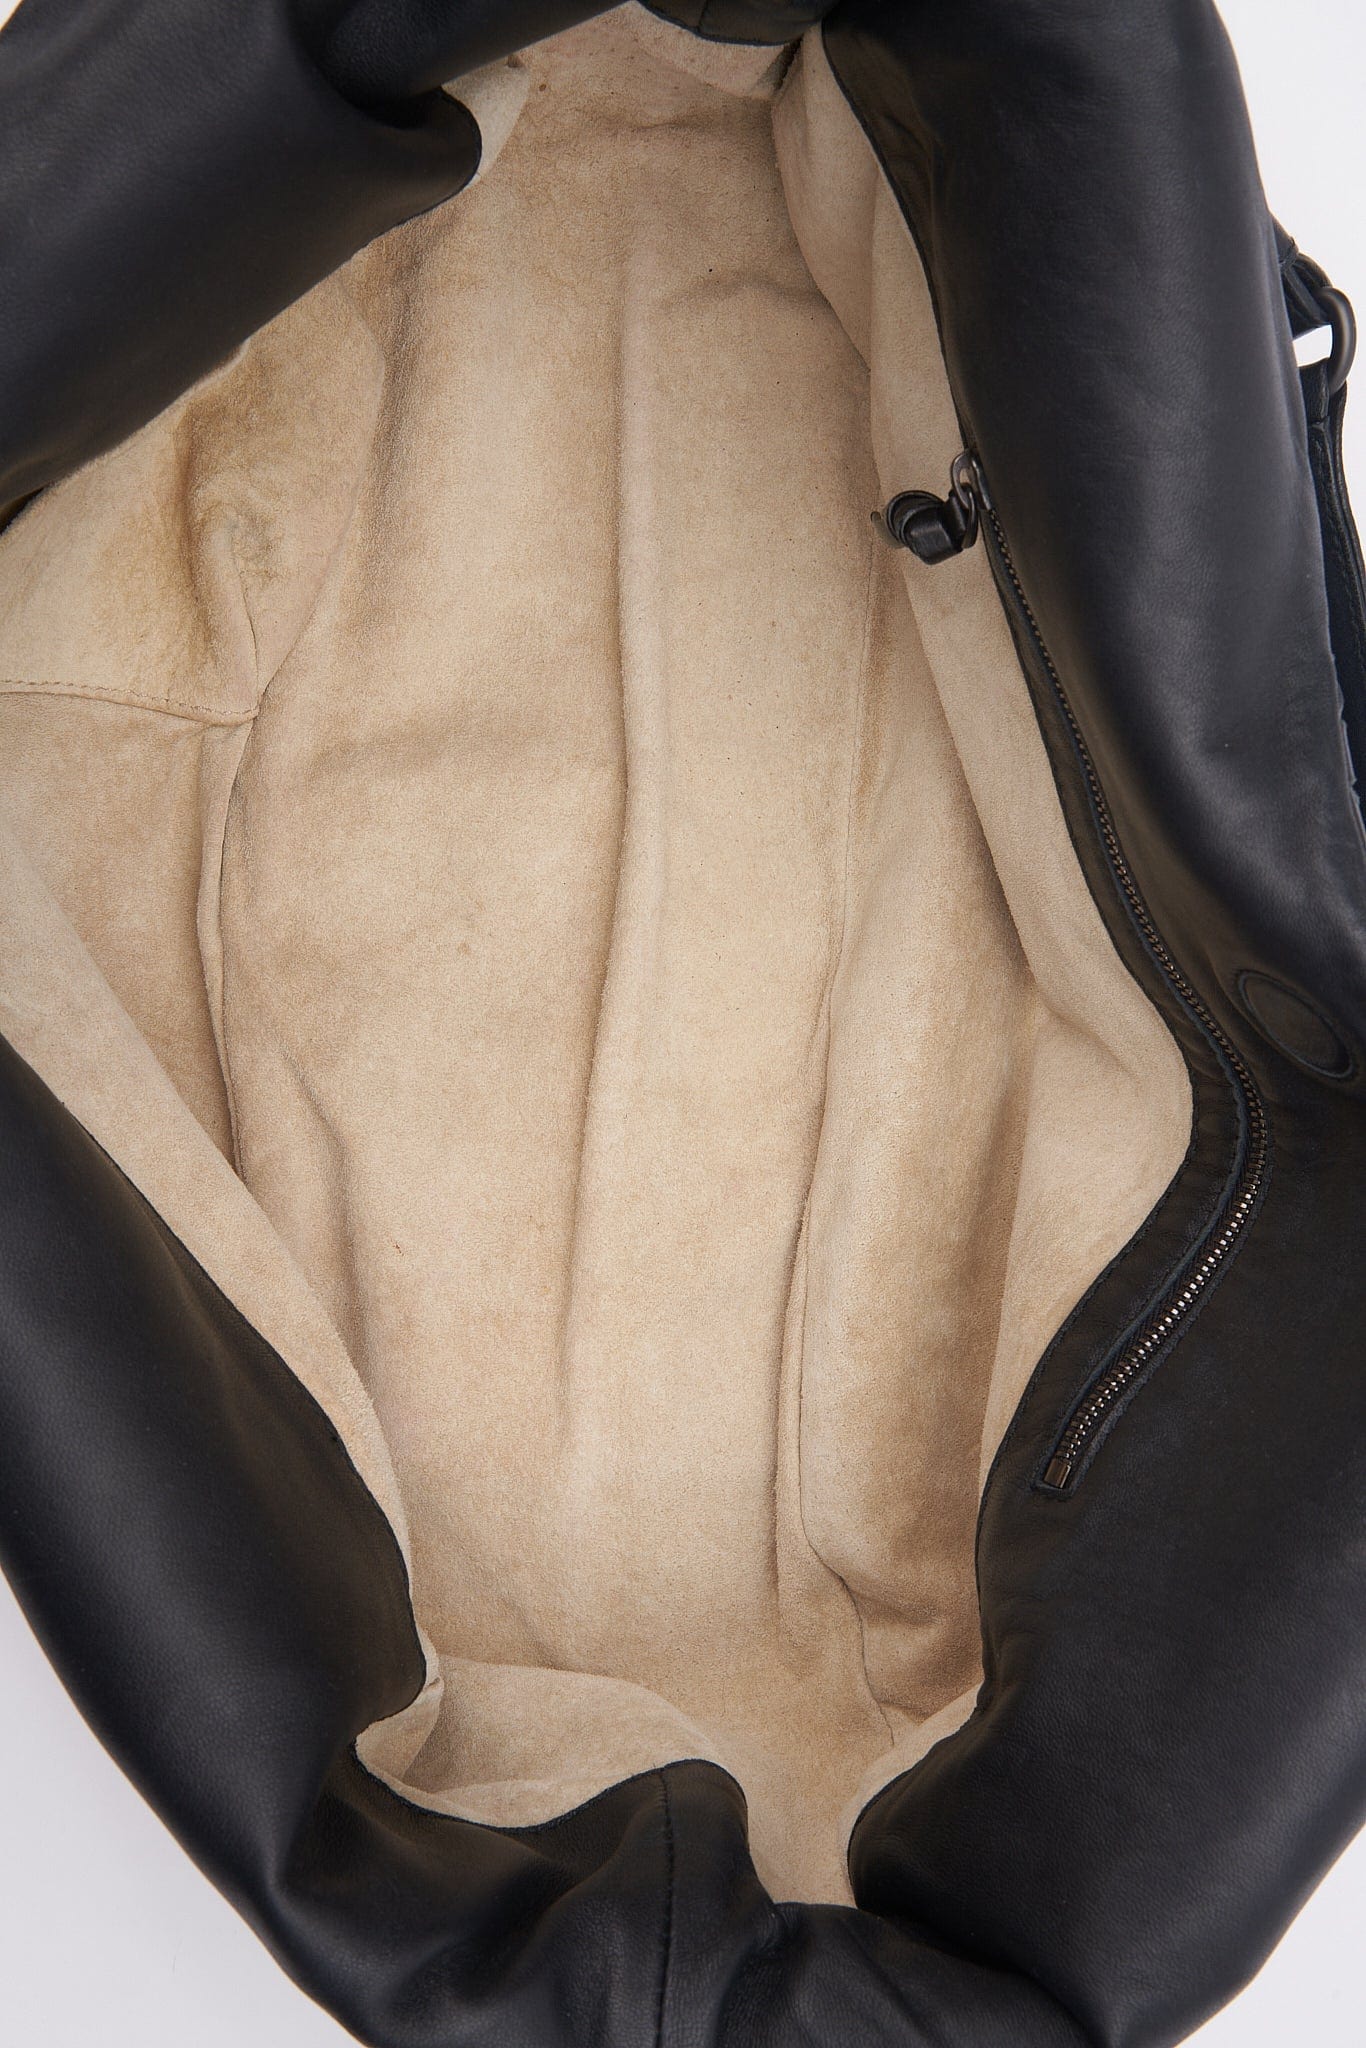 Vintage Bottega Veneta Black Intrecciato Leather Hobo Shoulder Bag